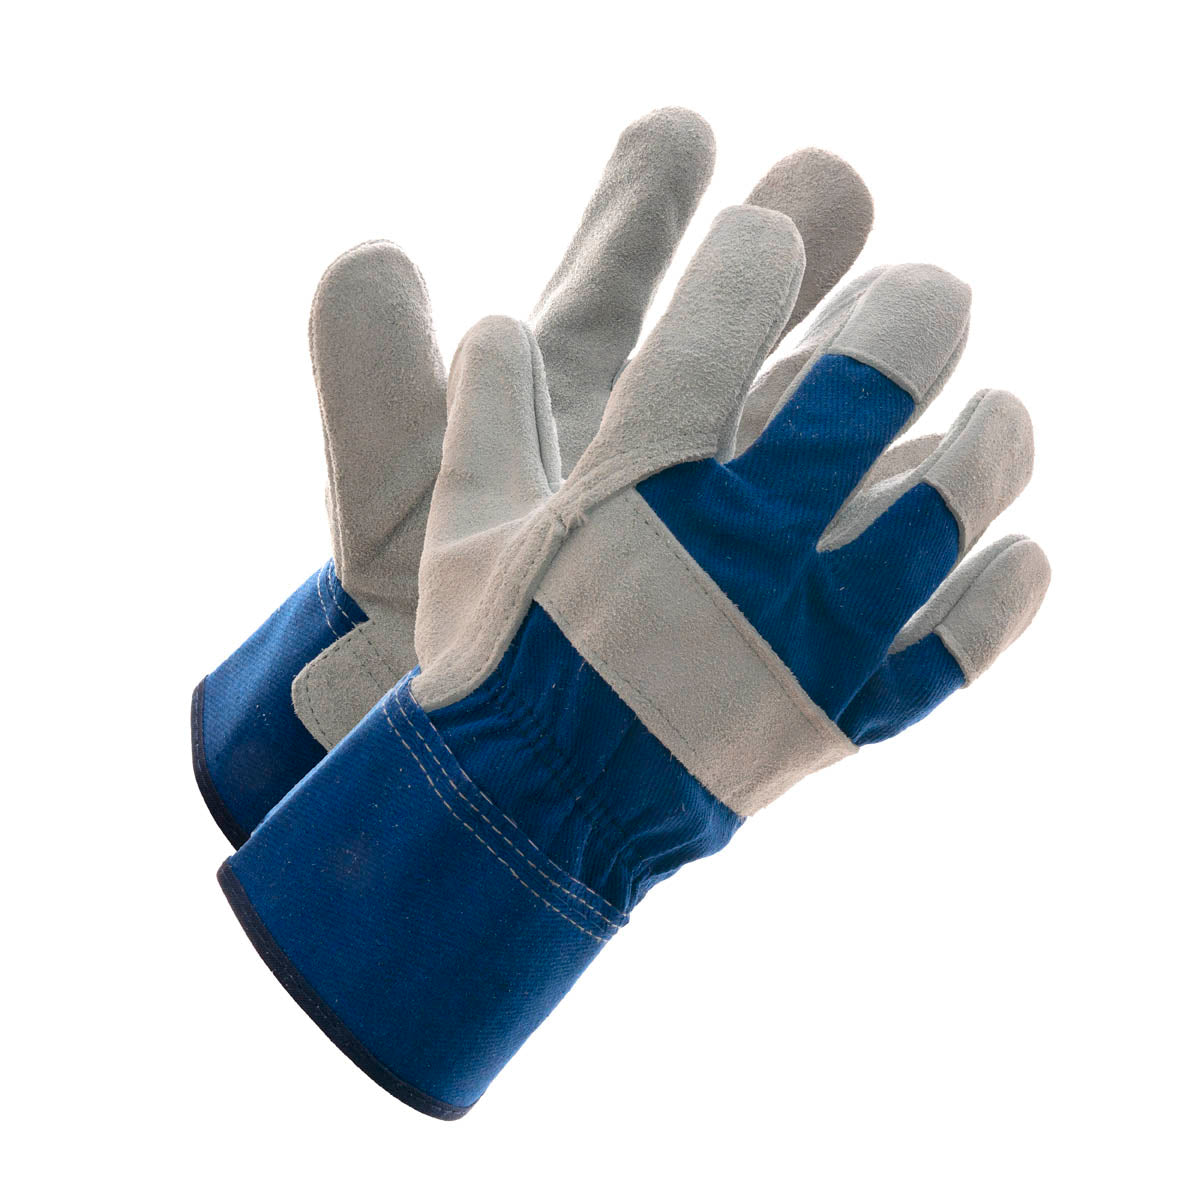 Sureguard Premium Rigger Gloves with PE Cuff